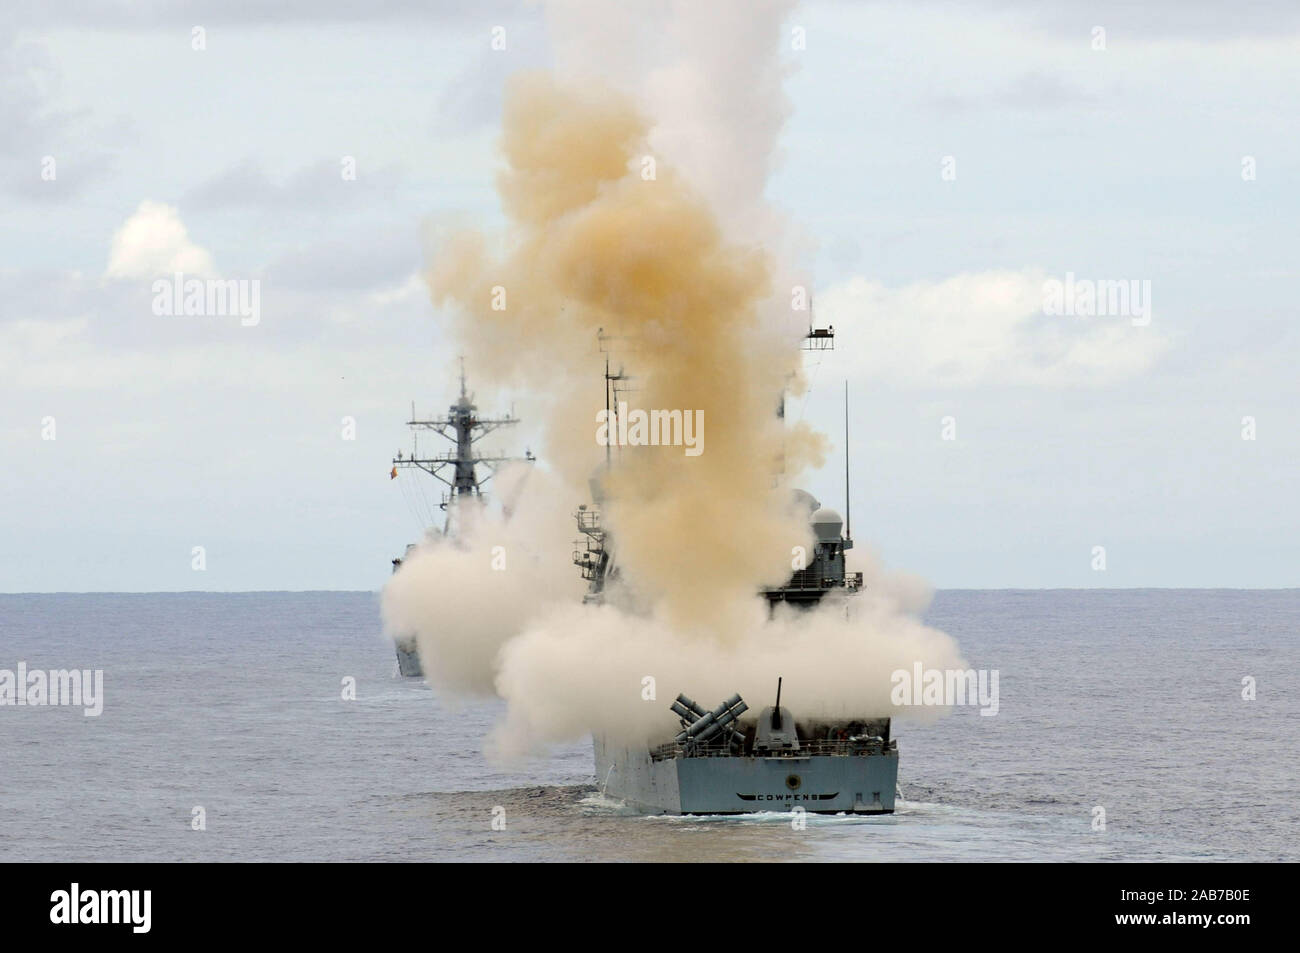 Pazifik (Sept. 20, 2012) Die Ticonderoga-Klasse geführte-missile Cruiser USS Cowpens (CG63) Brände ein Standard Missile 2 (SM-2) Rakete von vorn und hinten Rakete Decks des Schiffes während einer Rakete ausüben. Cowpens freut sich auf Yokosuka, Japan eingesetzt. Stockfoto